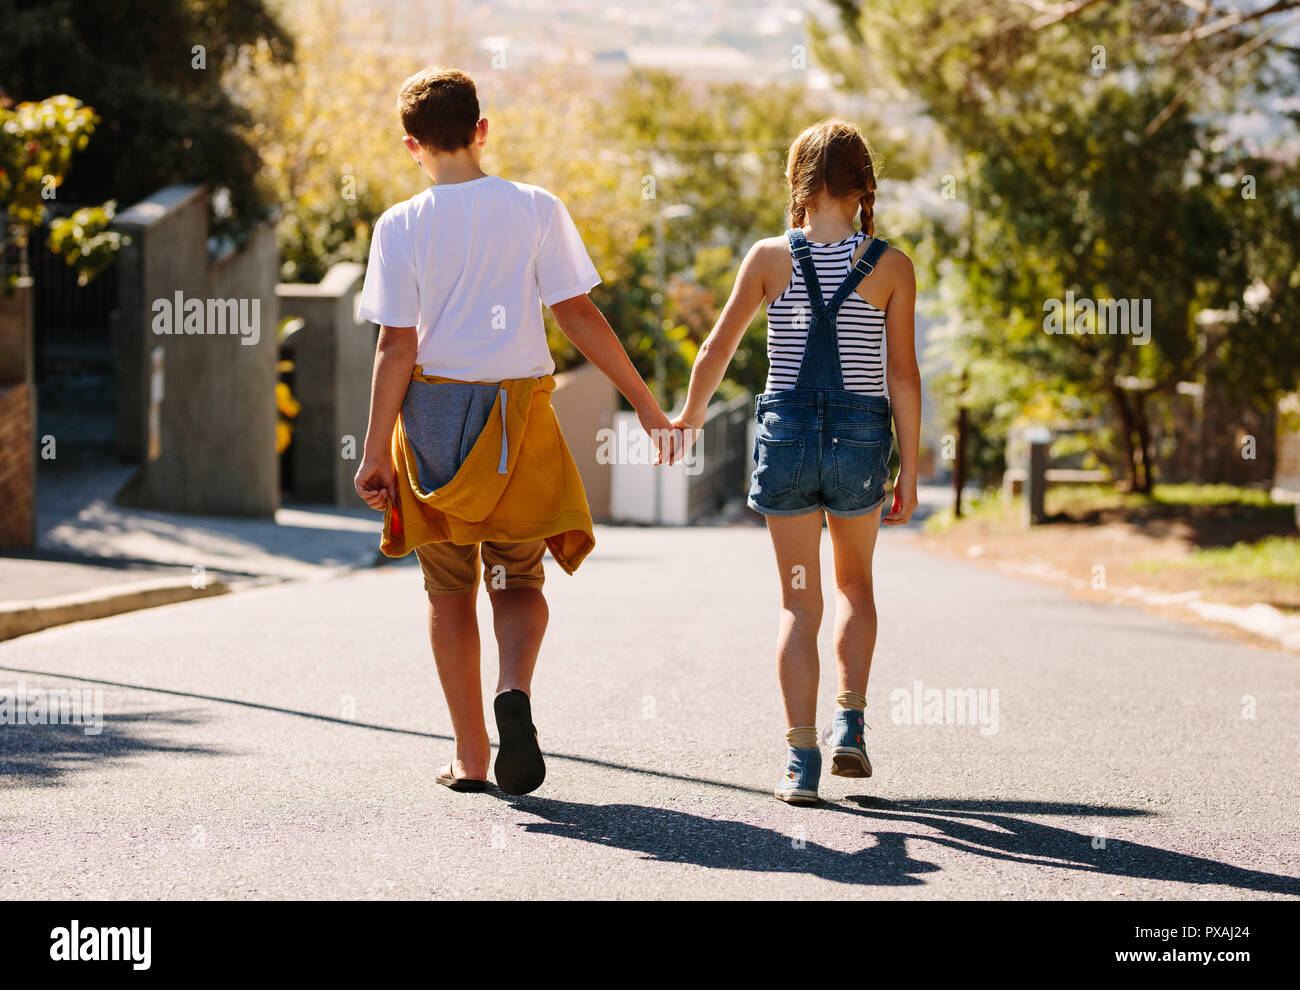 Junge und Mädchen gehen auf eine leere Straße zusammen. Kinder in der Liebe zu Fuß auf einer Straße, die Hand in Hand an einem sonnigen Tag. Stockfoto